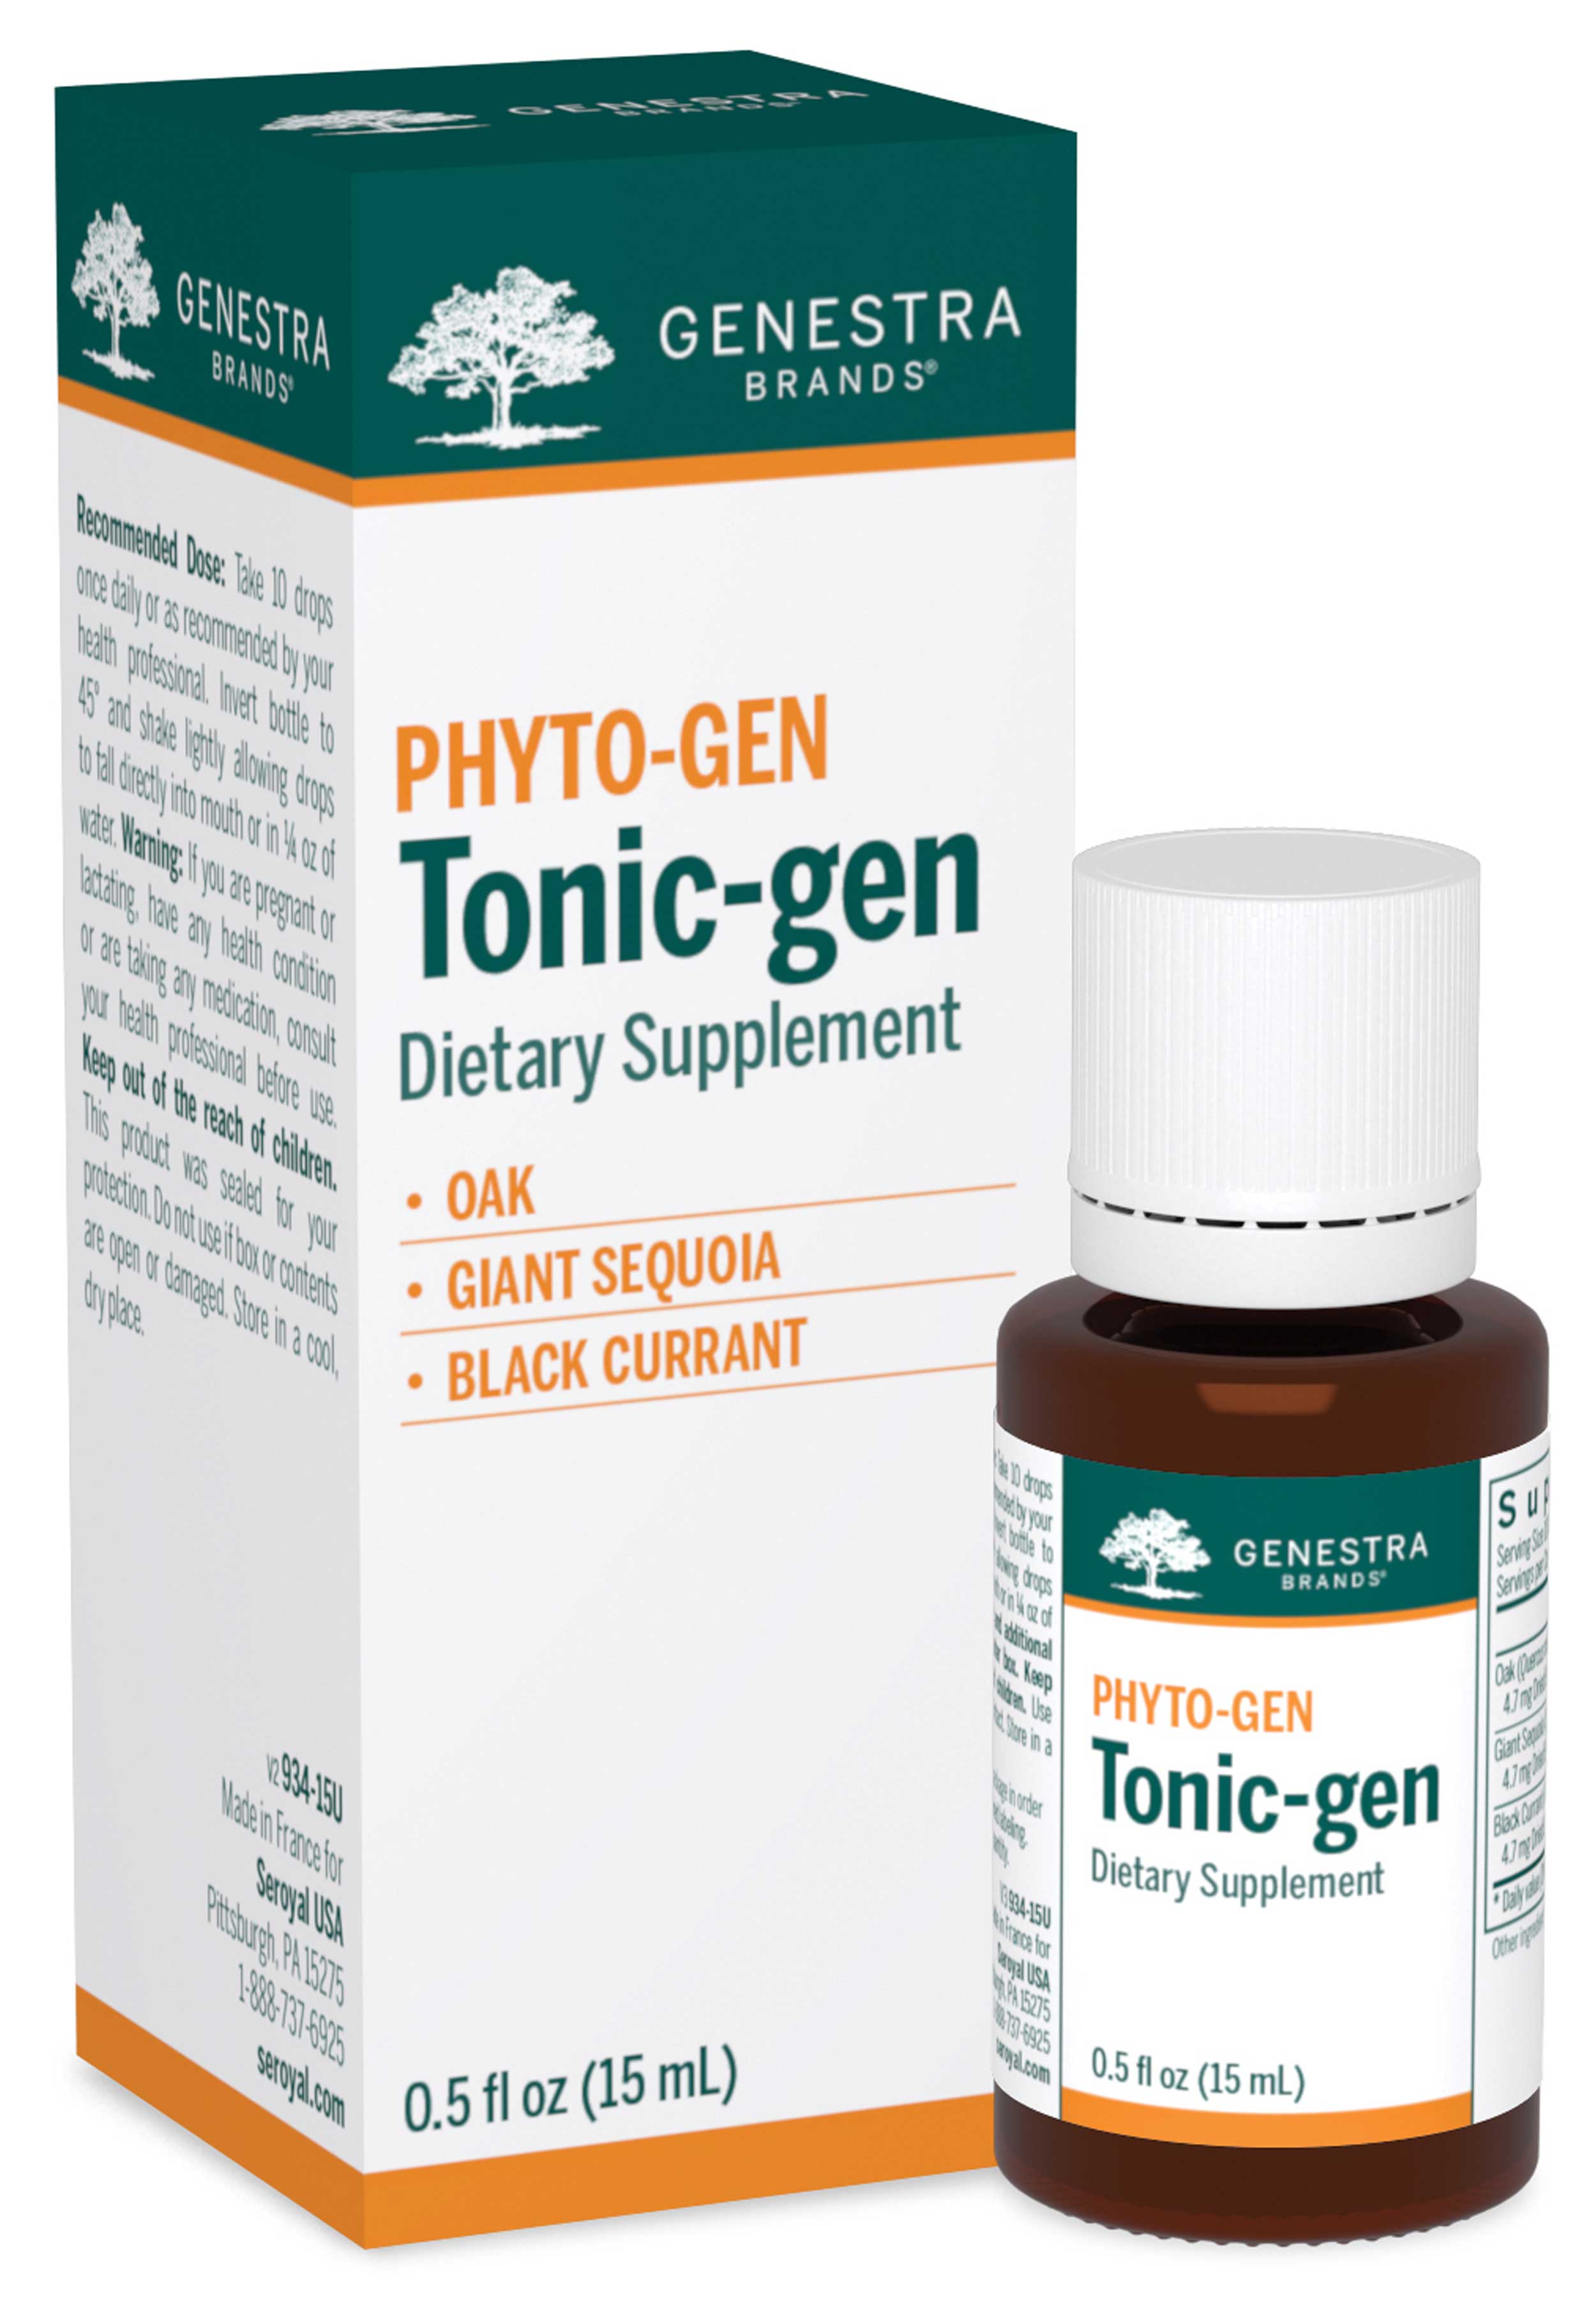 Genestra Brands Tonic-gen